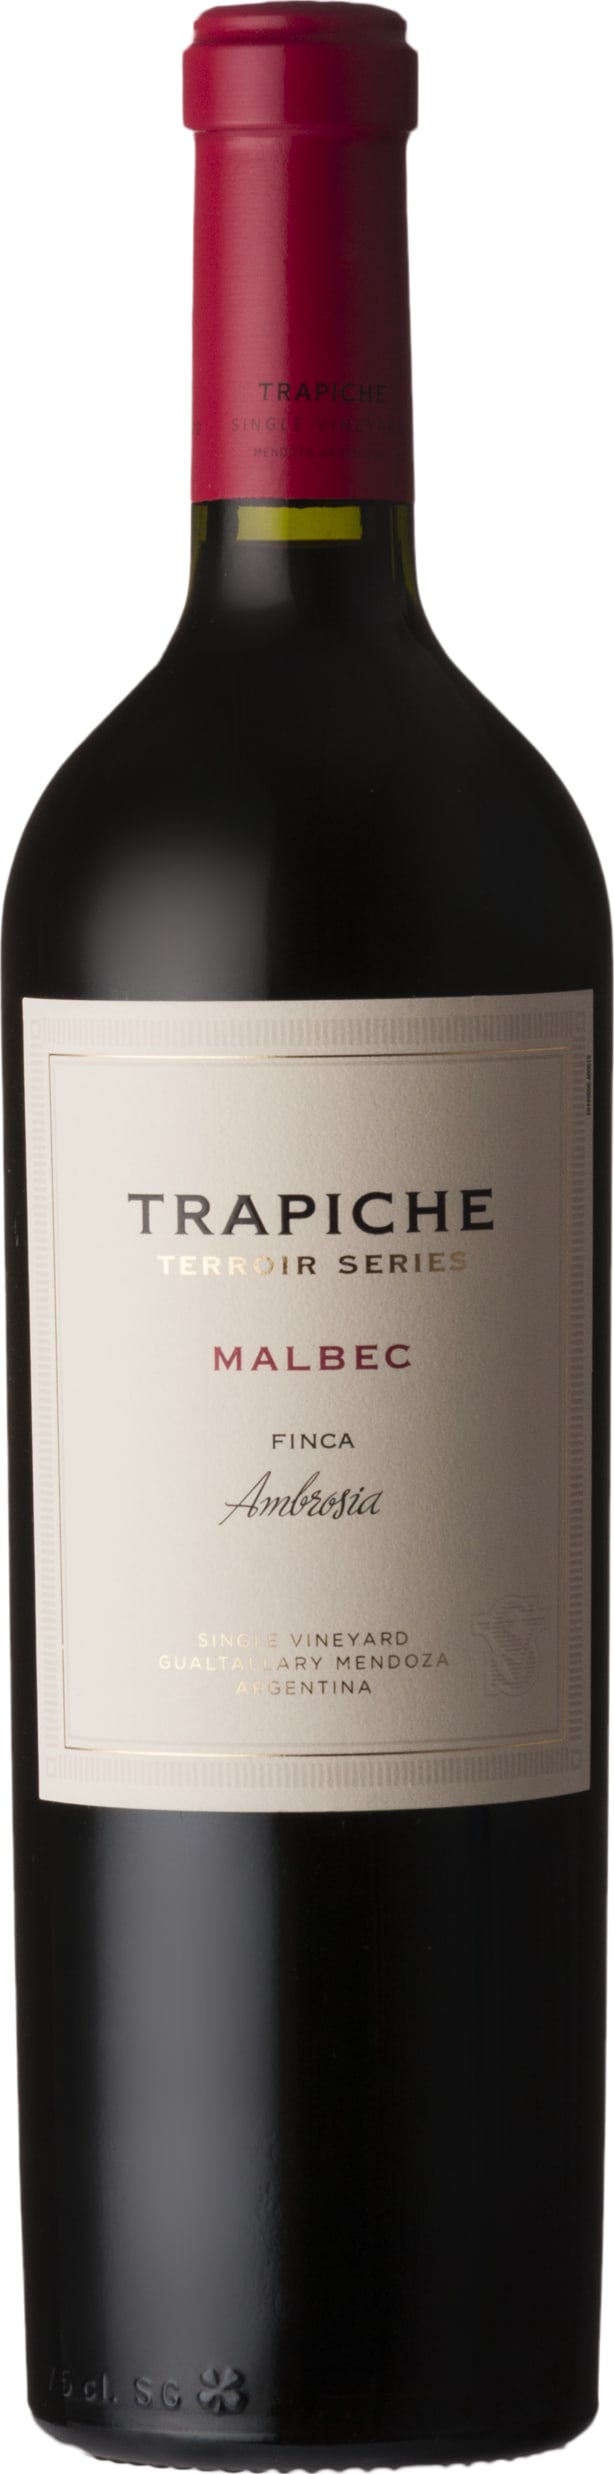 Trapiche Terroir Series Malbec Finca Ambrosia 2019 75cl - Buy Trapiche Wines from GREAT WINES DIRECT wine shop